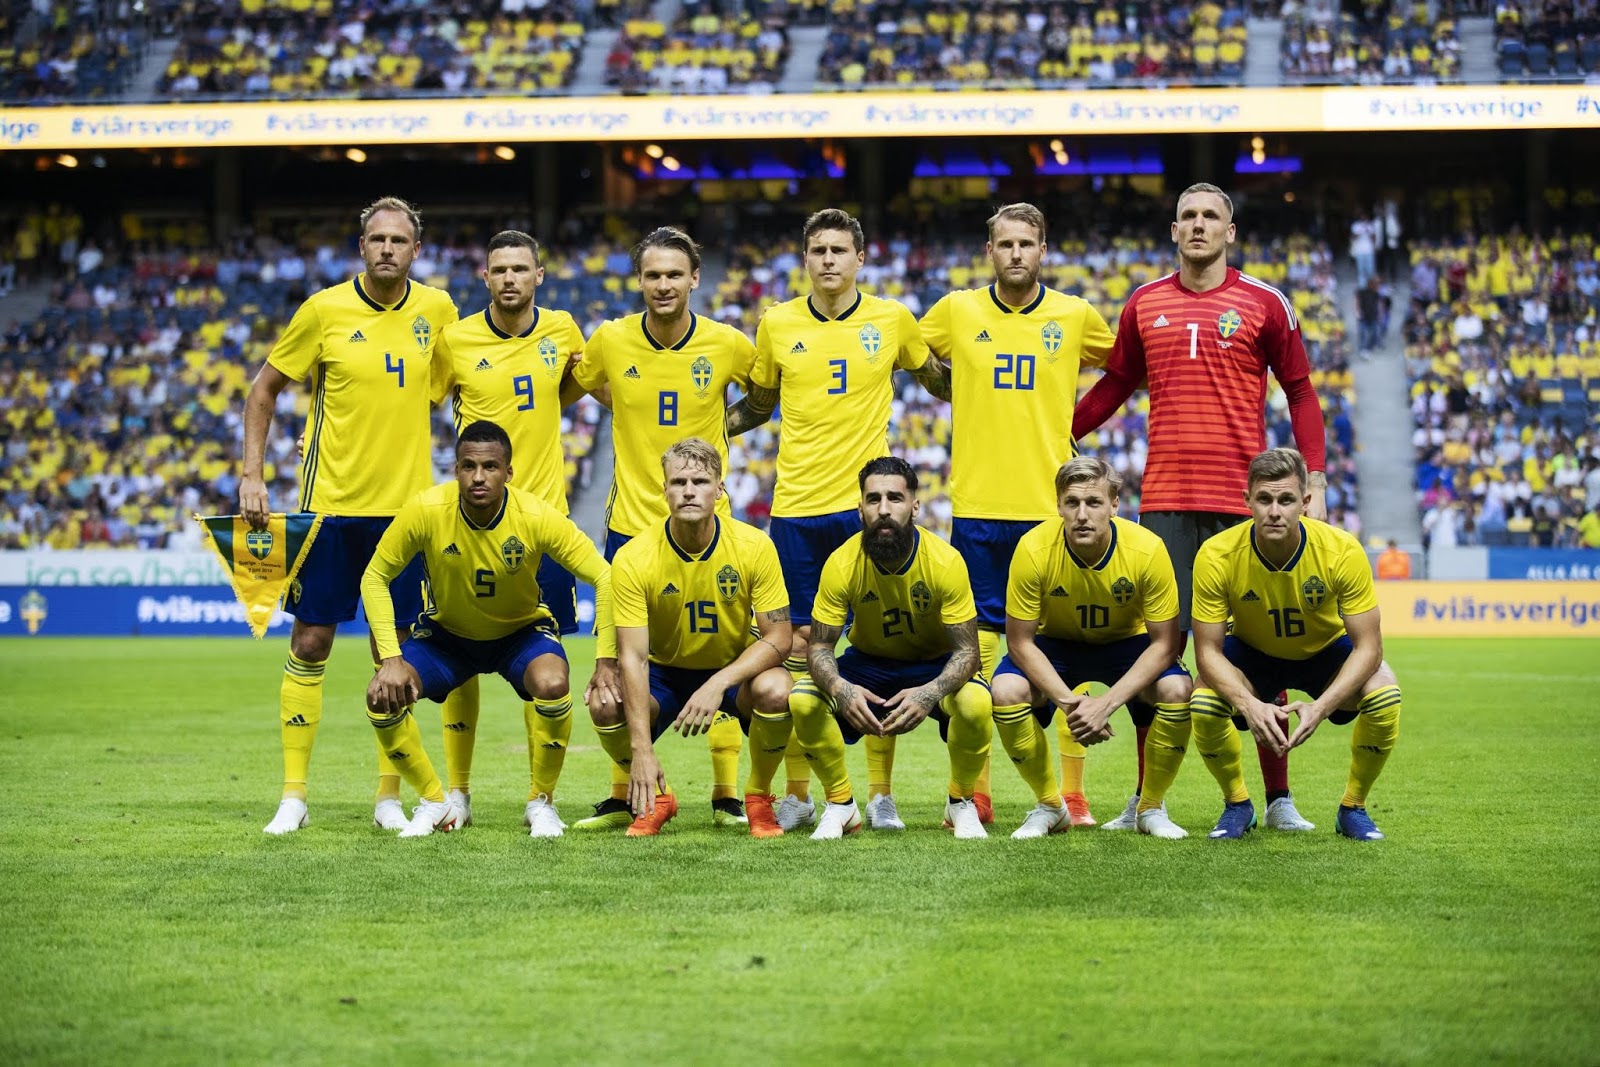 Daftar Skuad Nama Nama Pemain Timnas Swedia di Piala Dunia ...